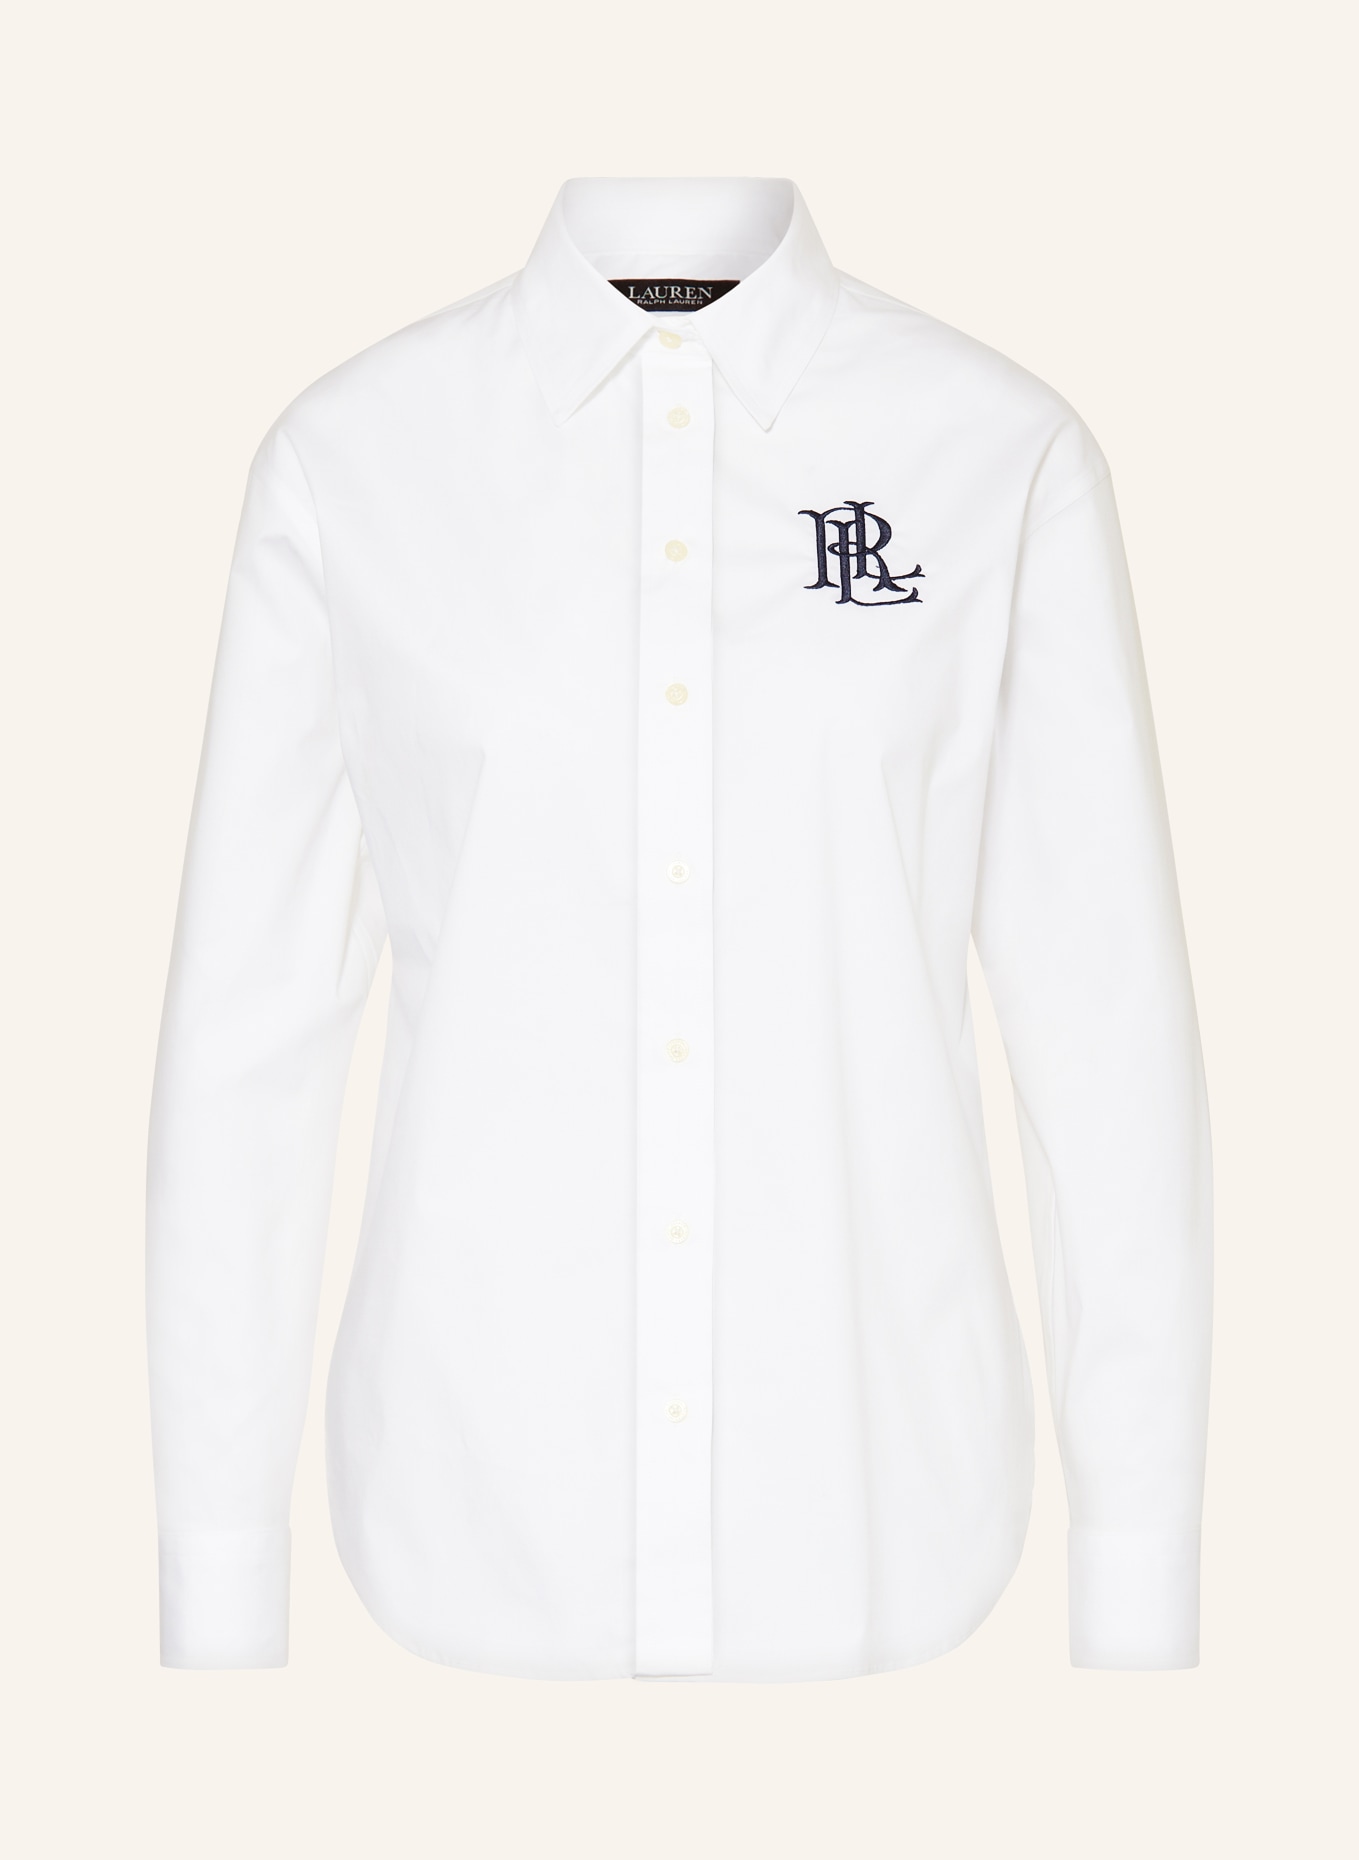 LAUREN RALPH LAUREN Shirt blouse, Color: WHITE (Image 1)